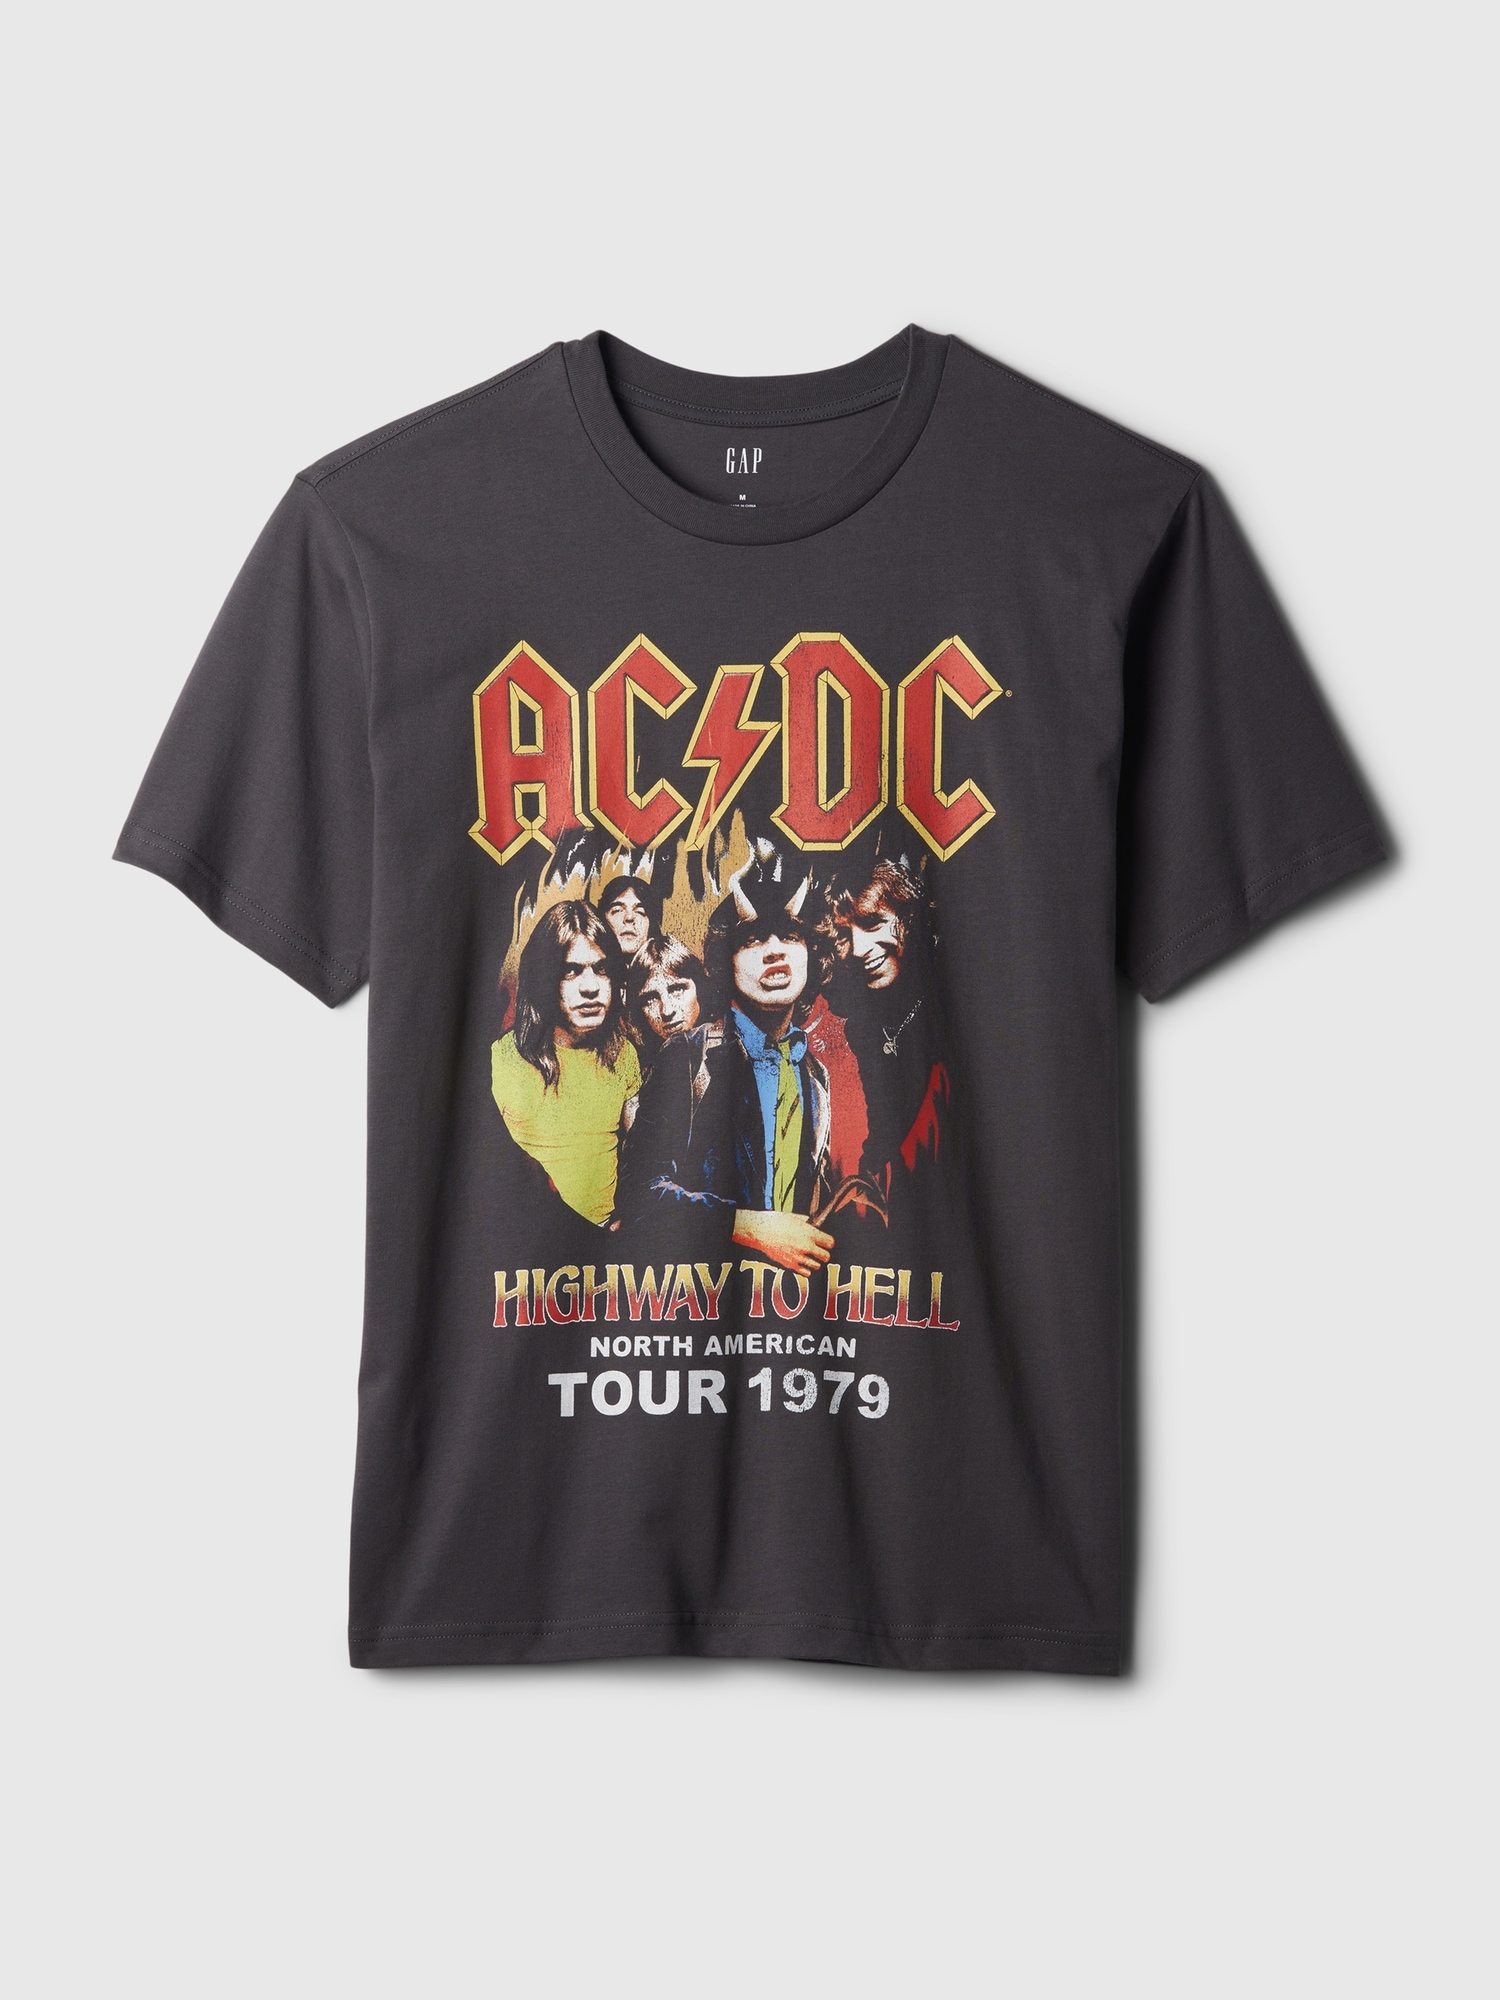 T-shirt à imprimé de la tournée 1979 d’AC/DC